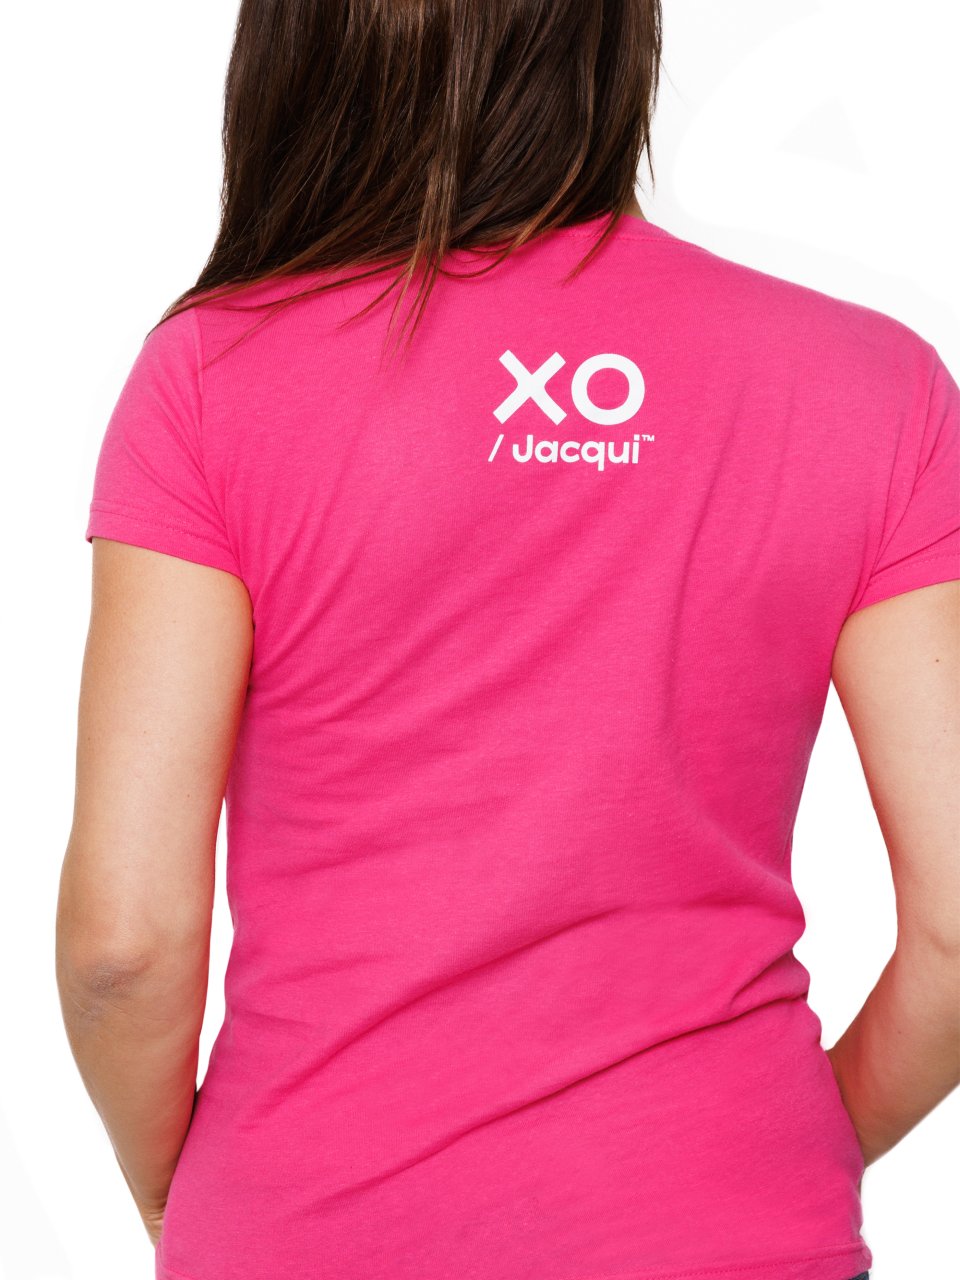 Menopositive Merch | XO Pink T-Shirt - XO Jacqui